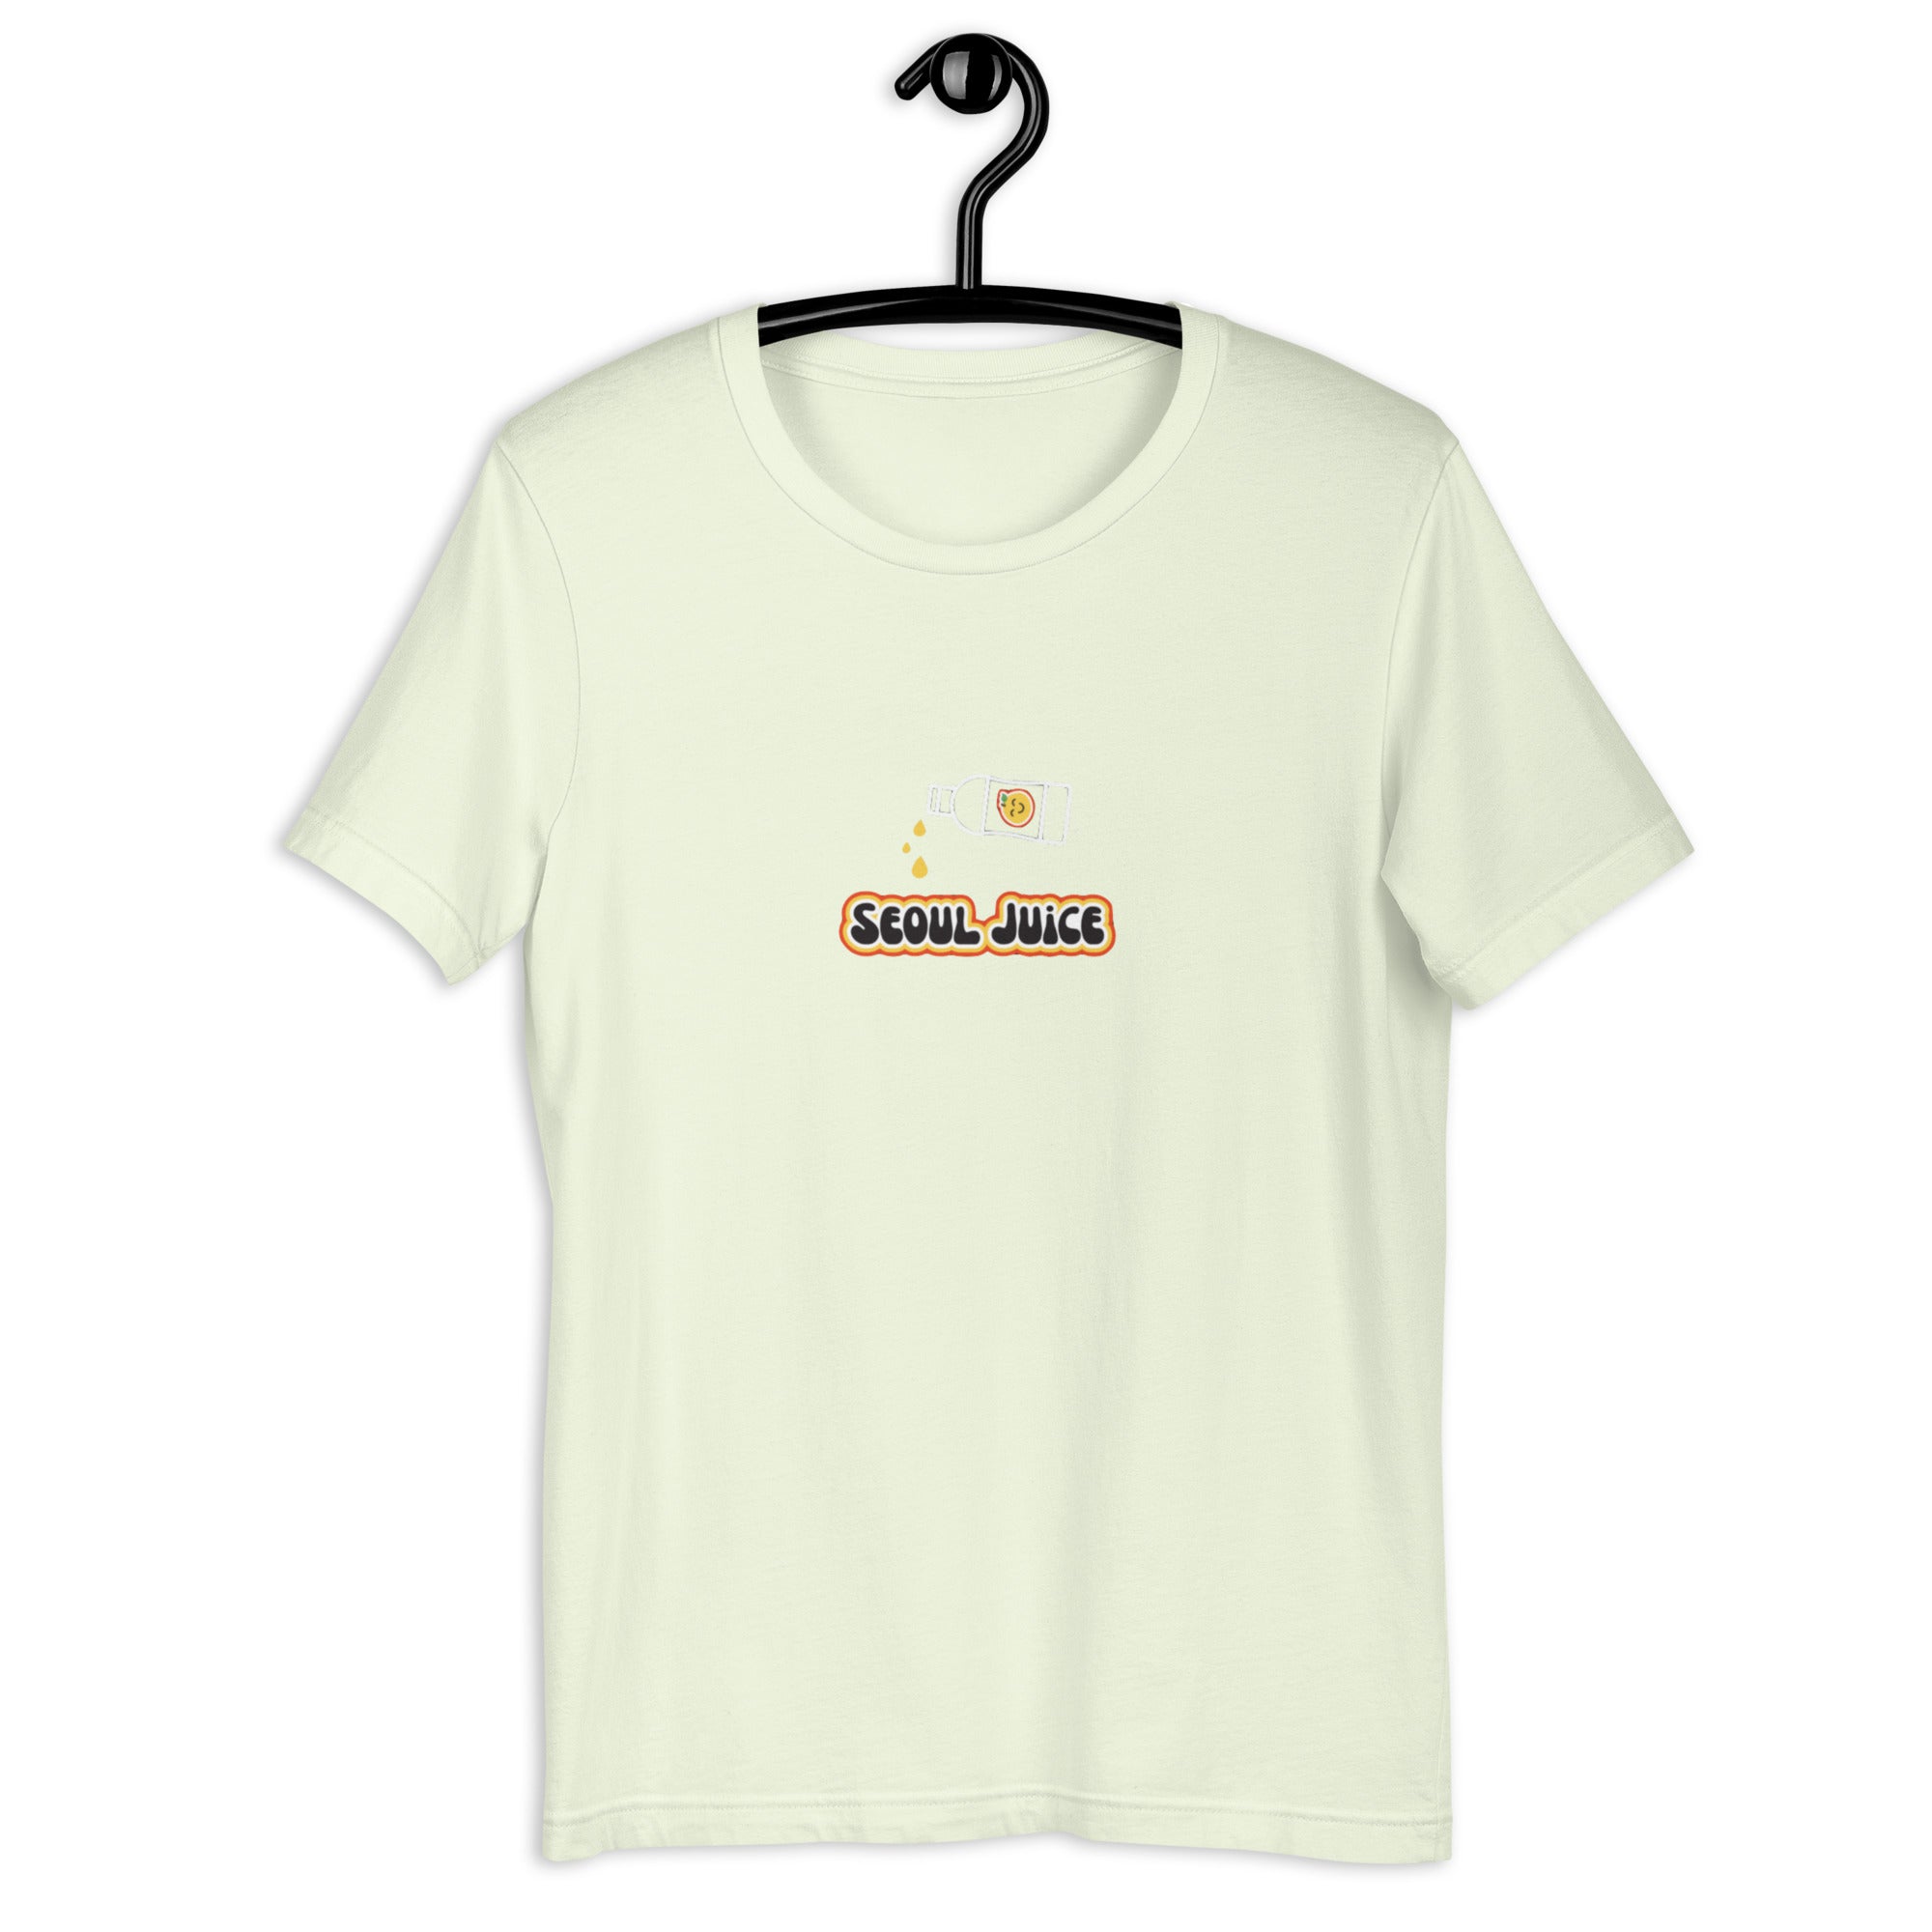 Seoul Drip T-Shirt